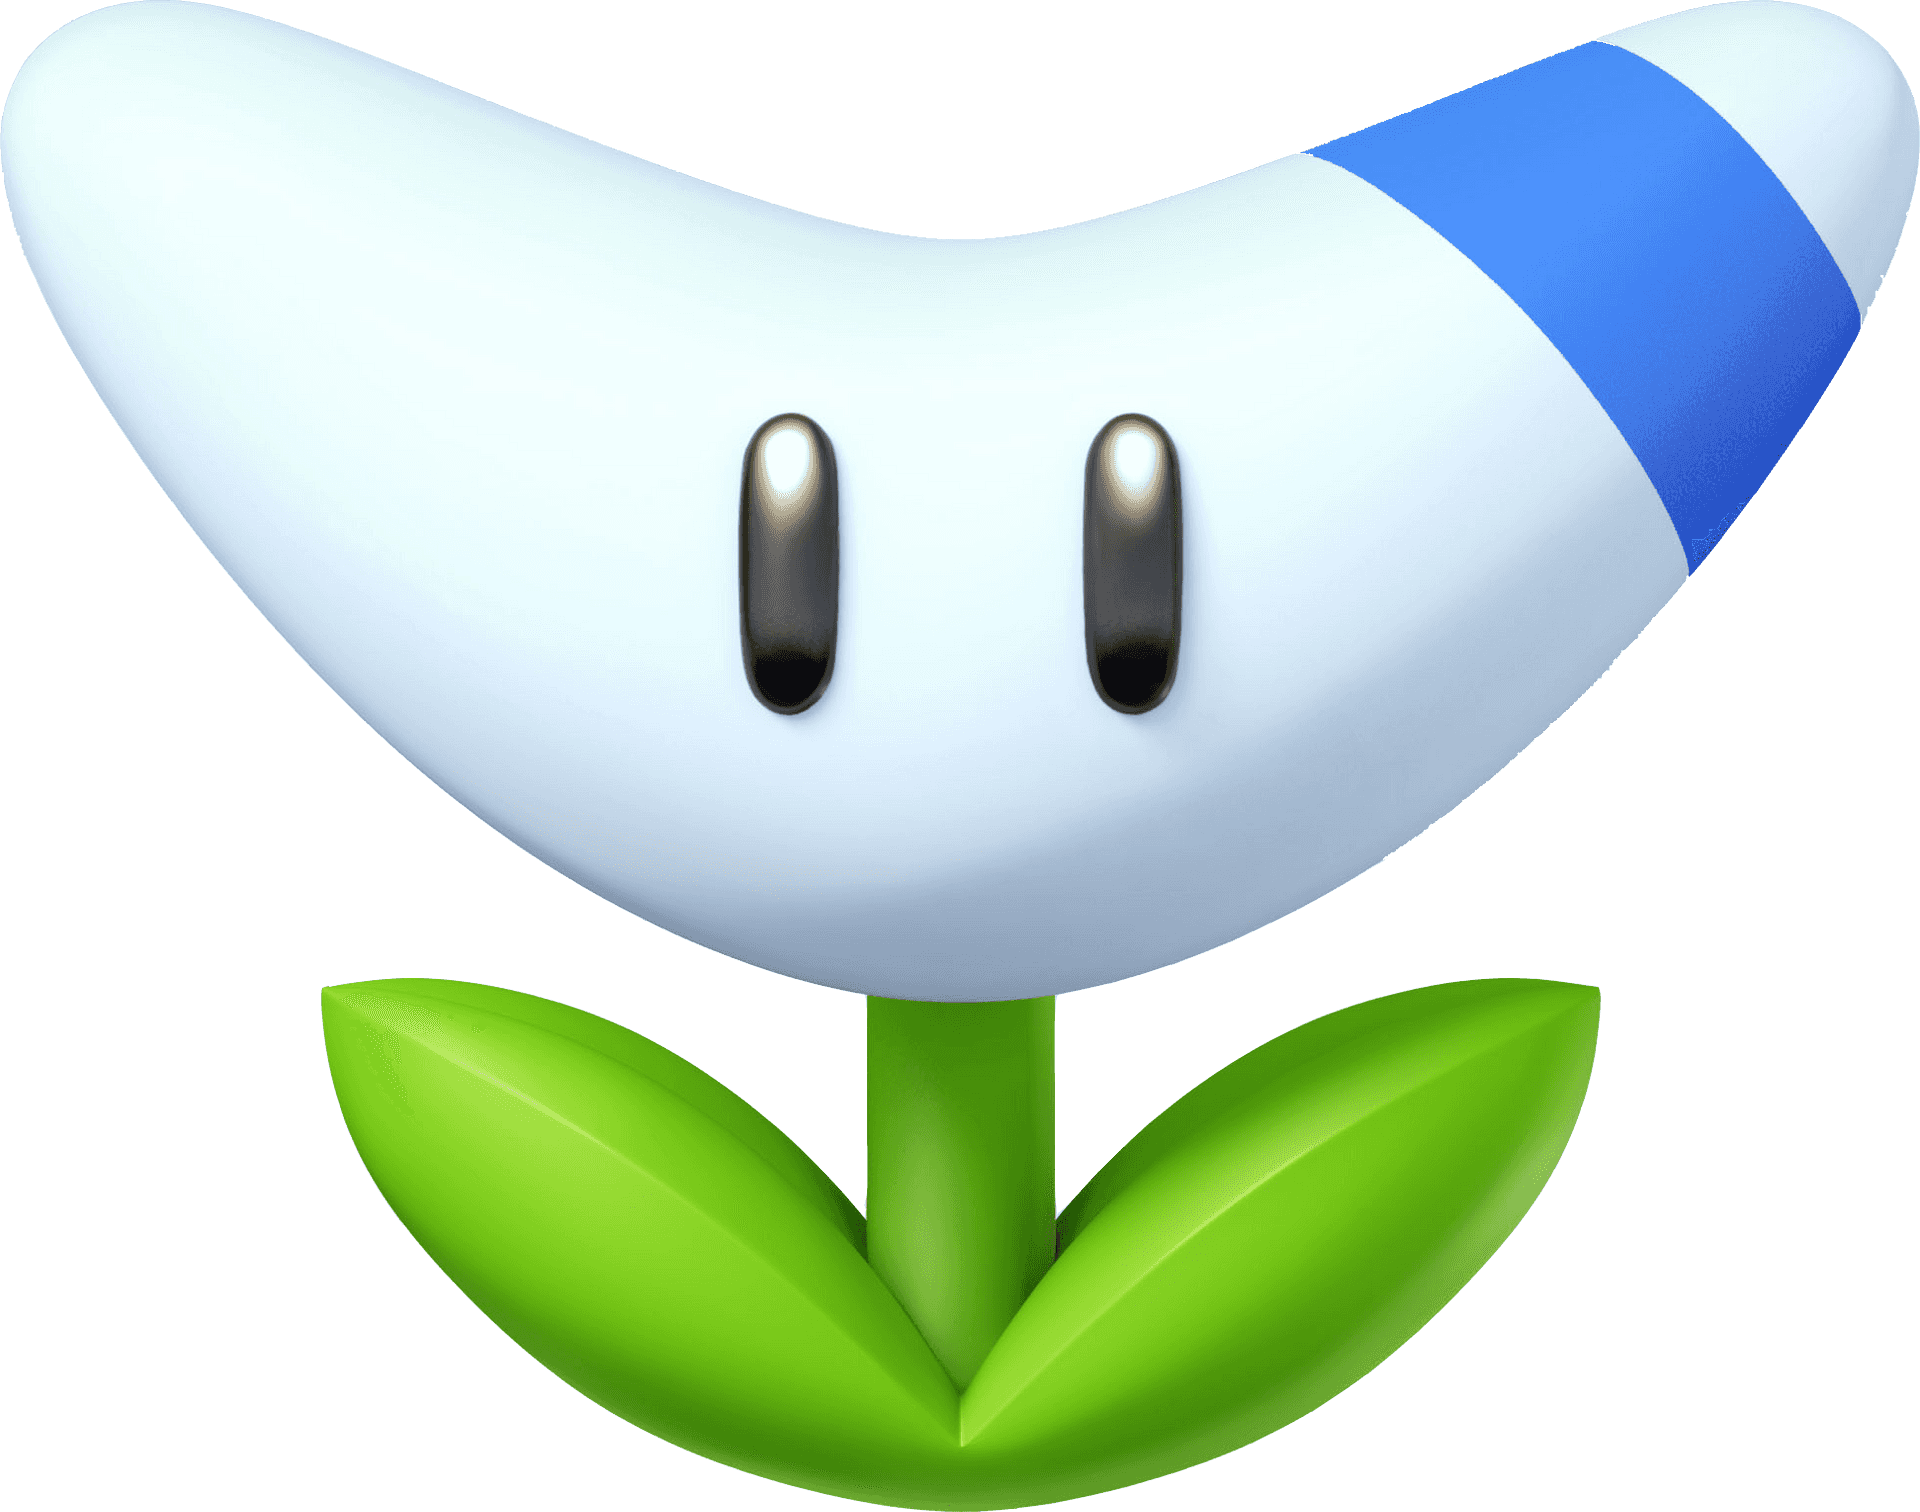 Animated Boomerang Character PNG image